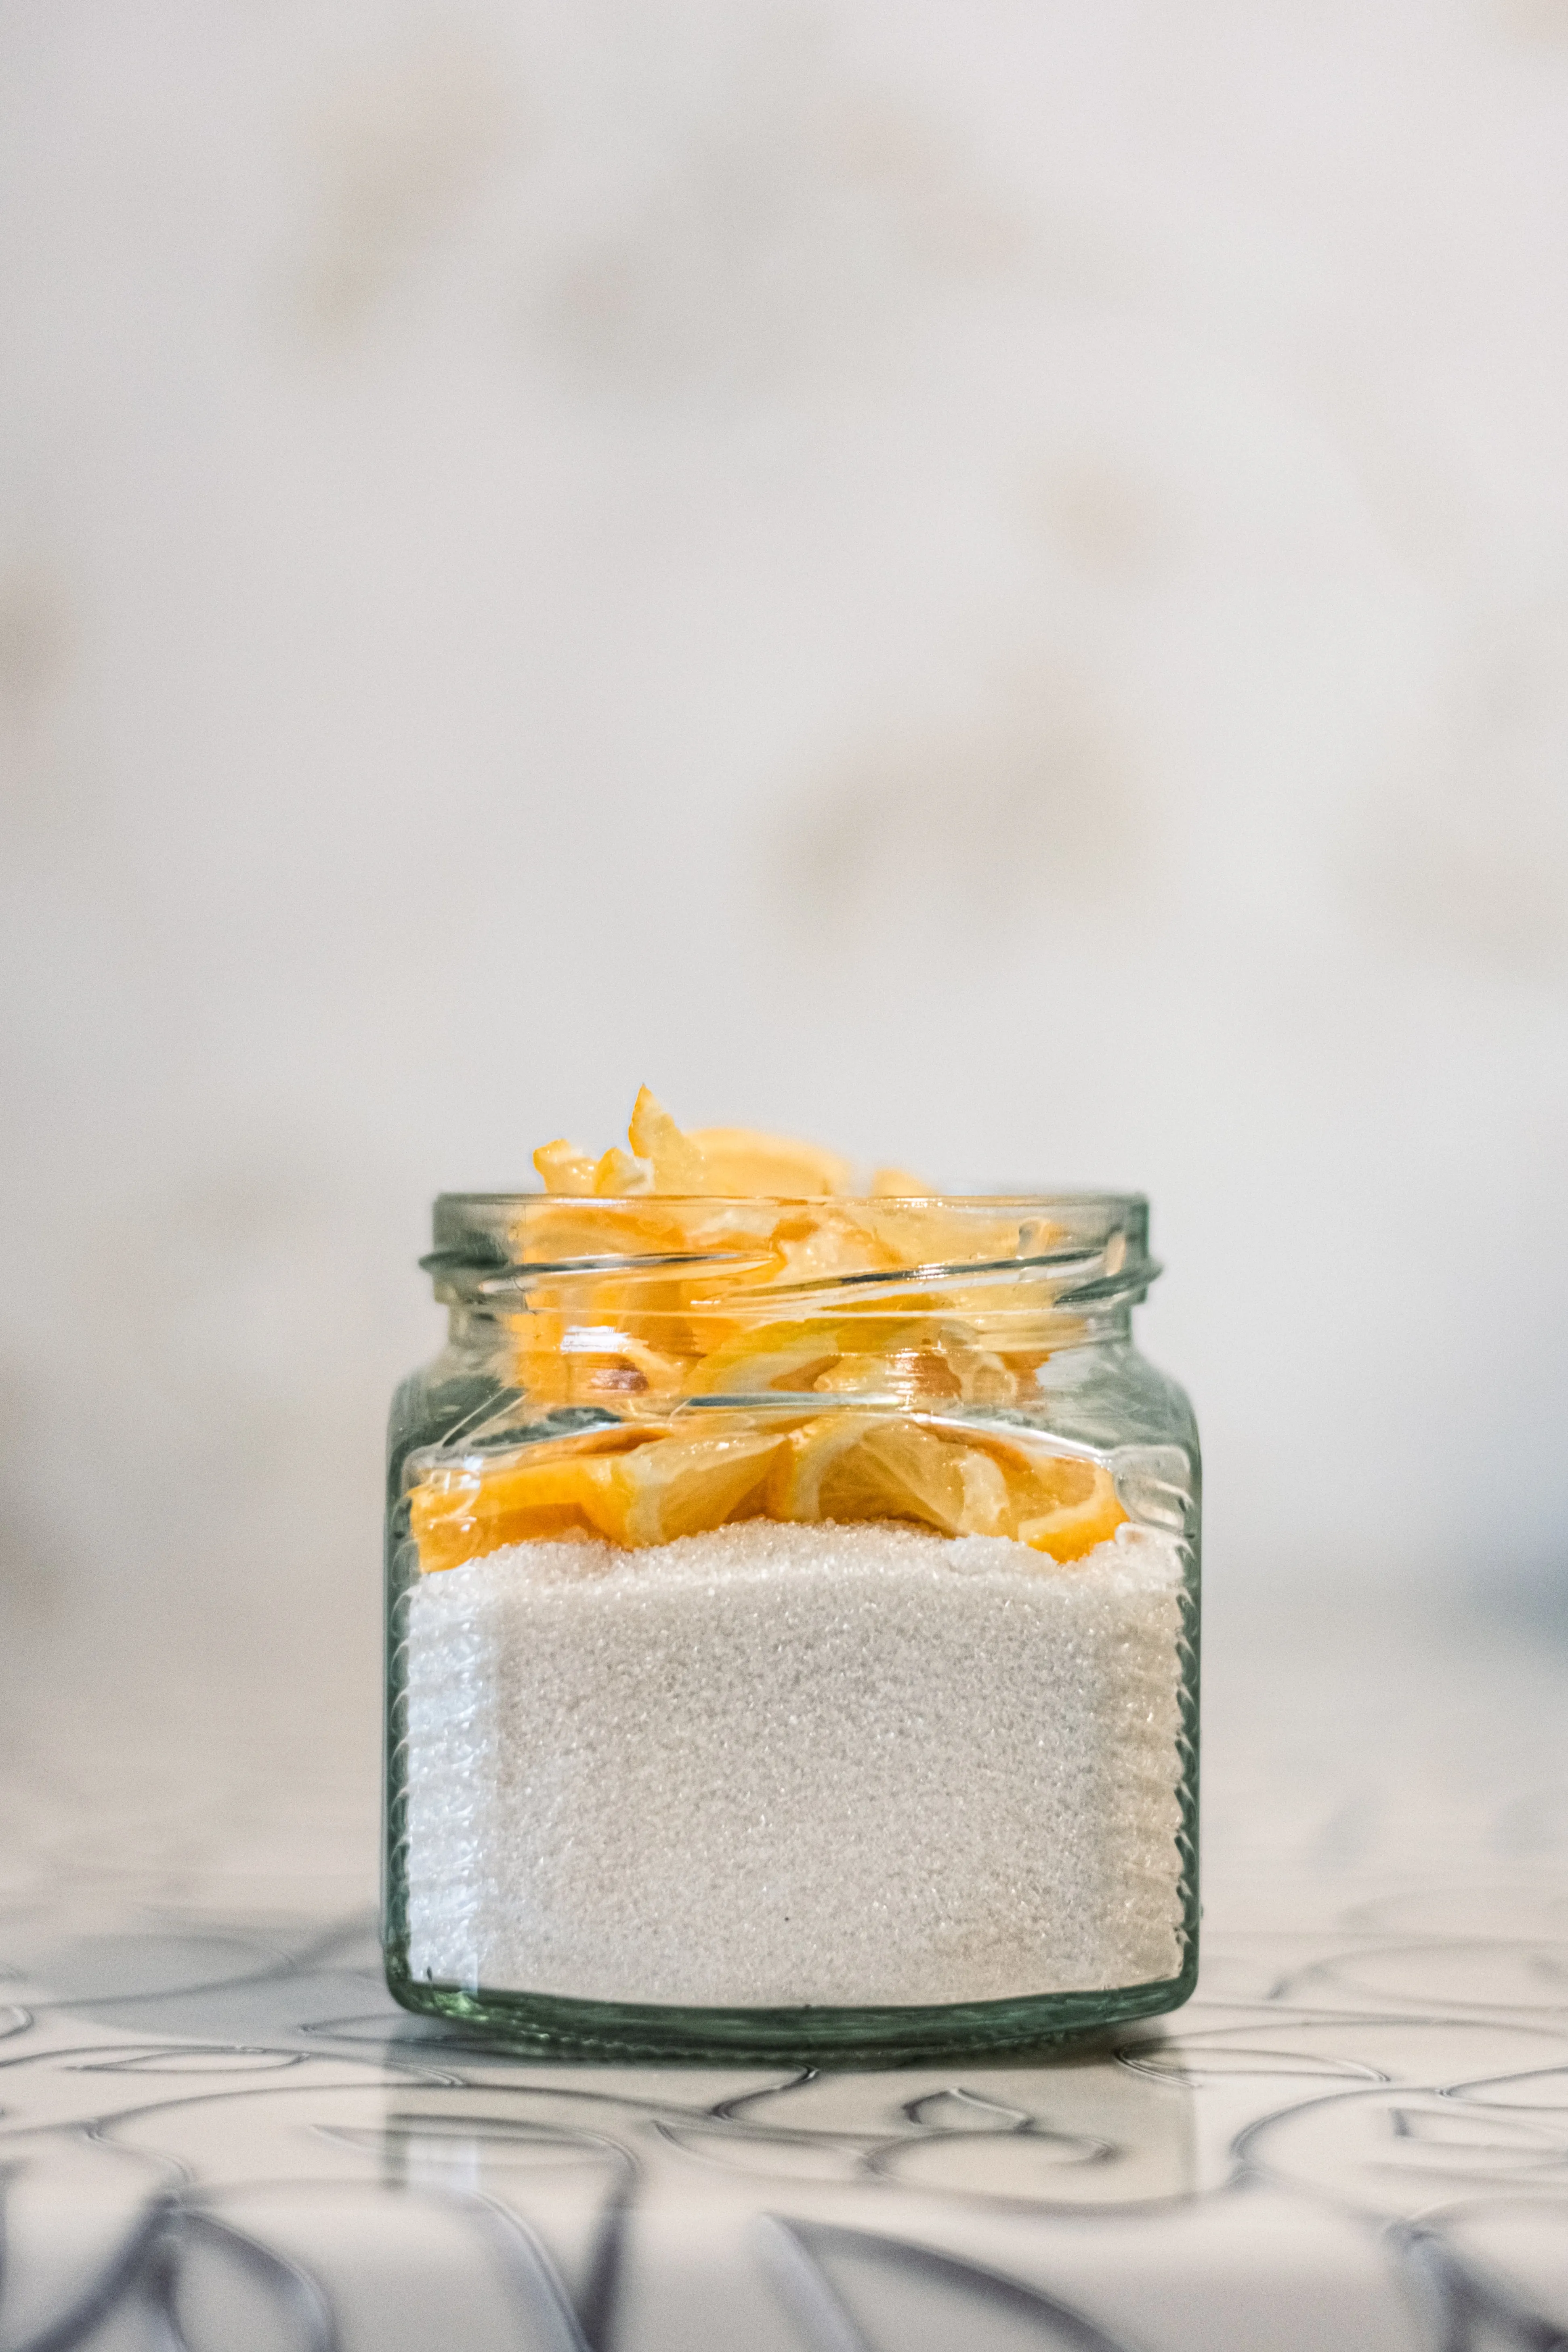 Як почистити срібло лимонною кислотою